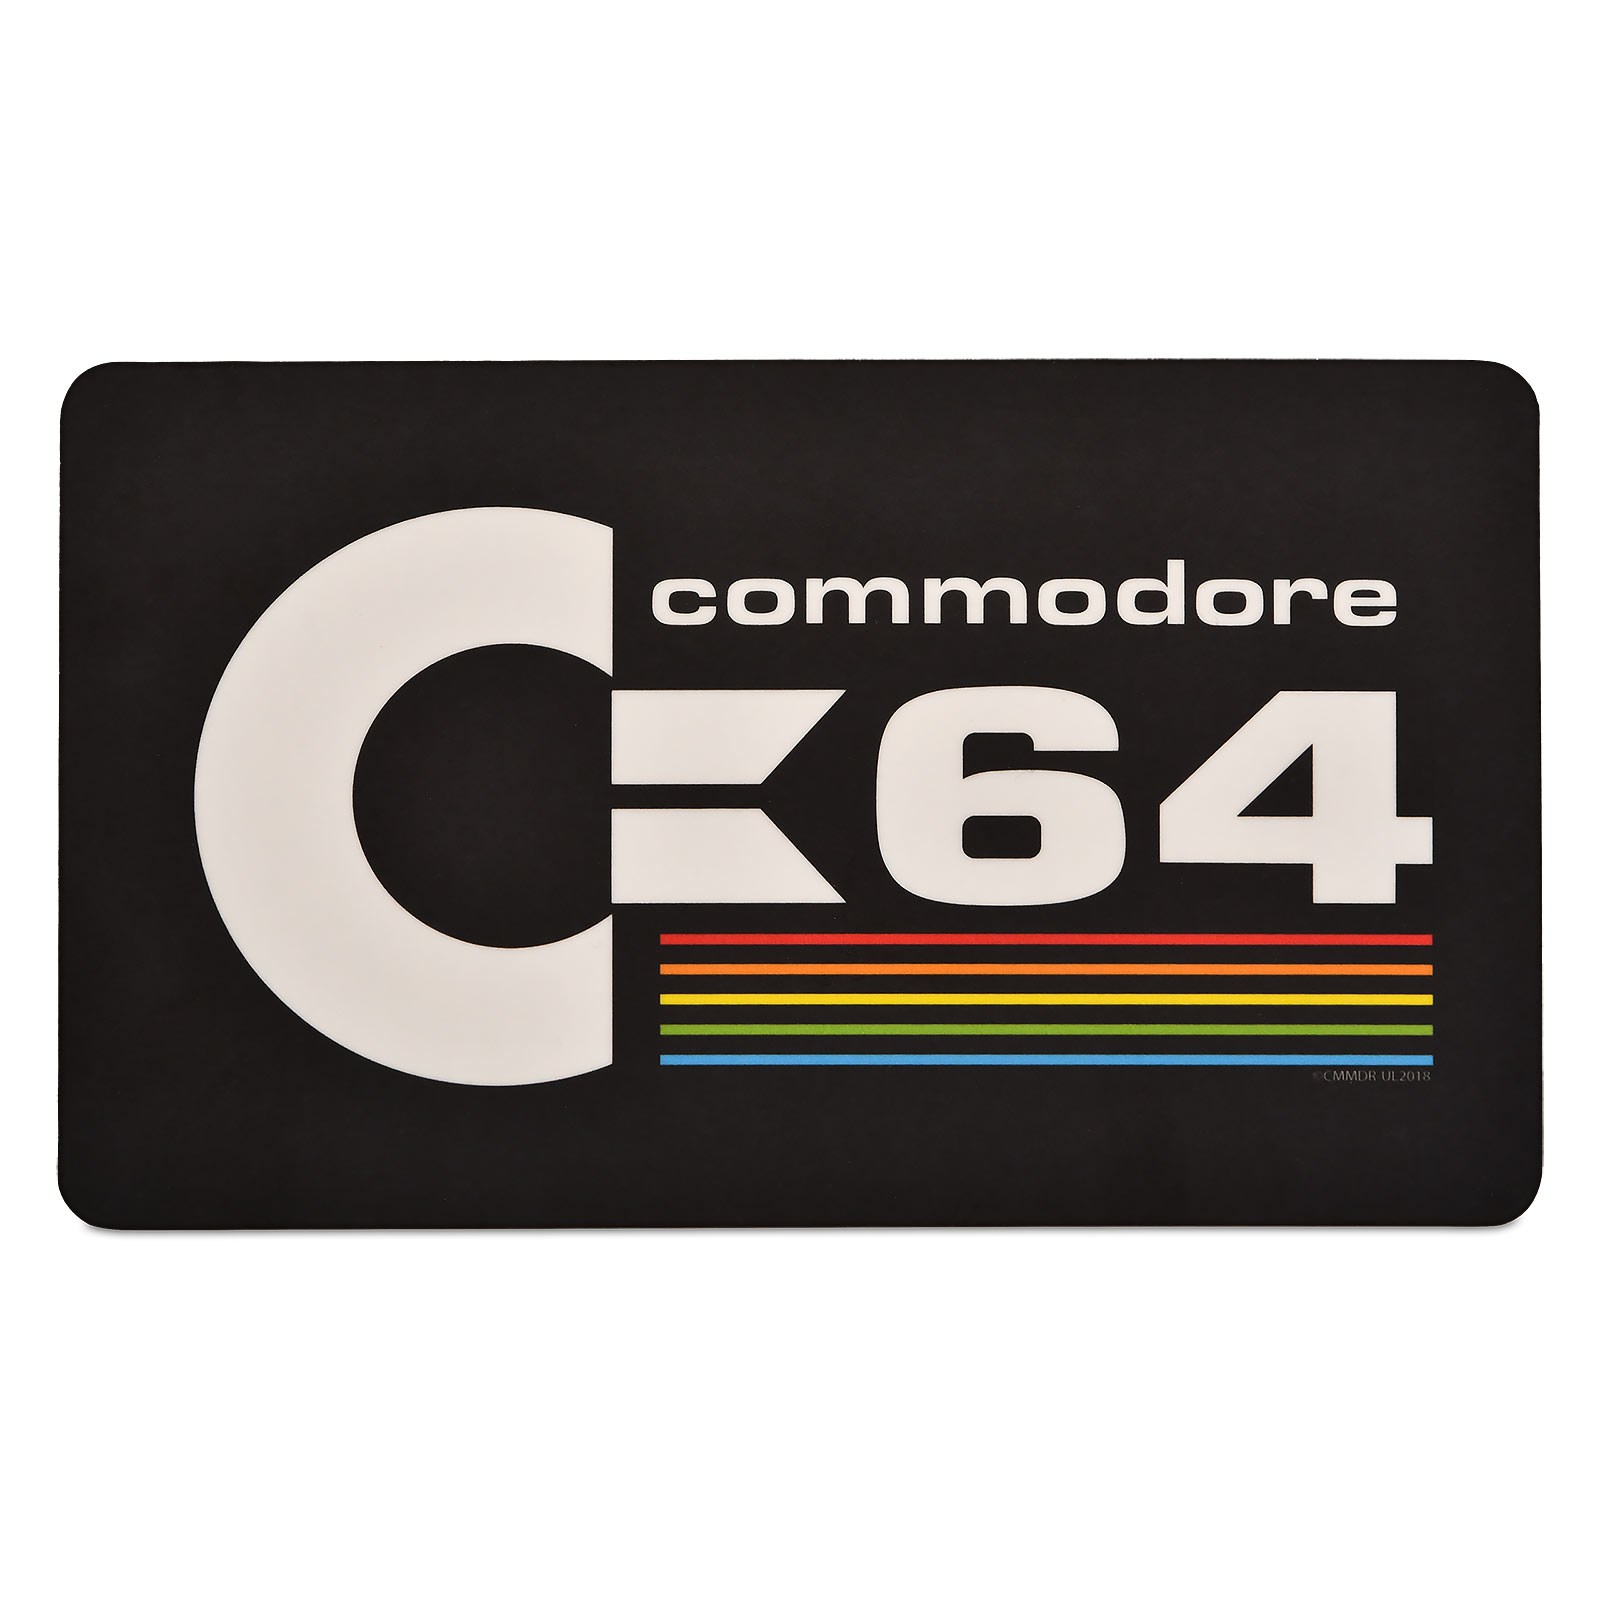 Commodore C64 "Logo"  Schneidebrett Frühstücksbrettchen 